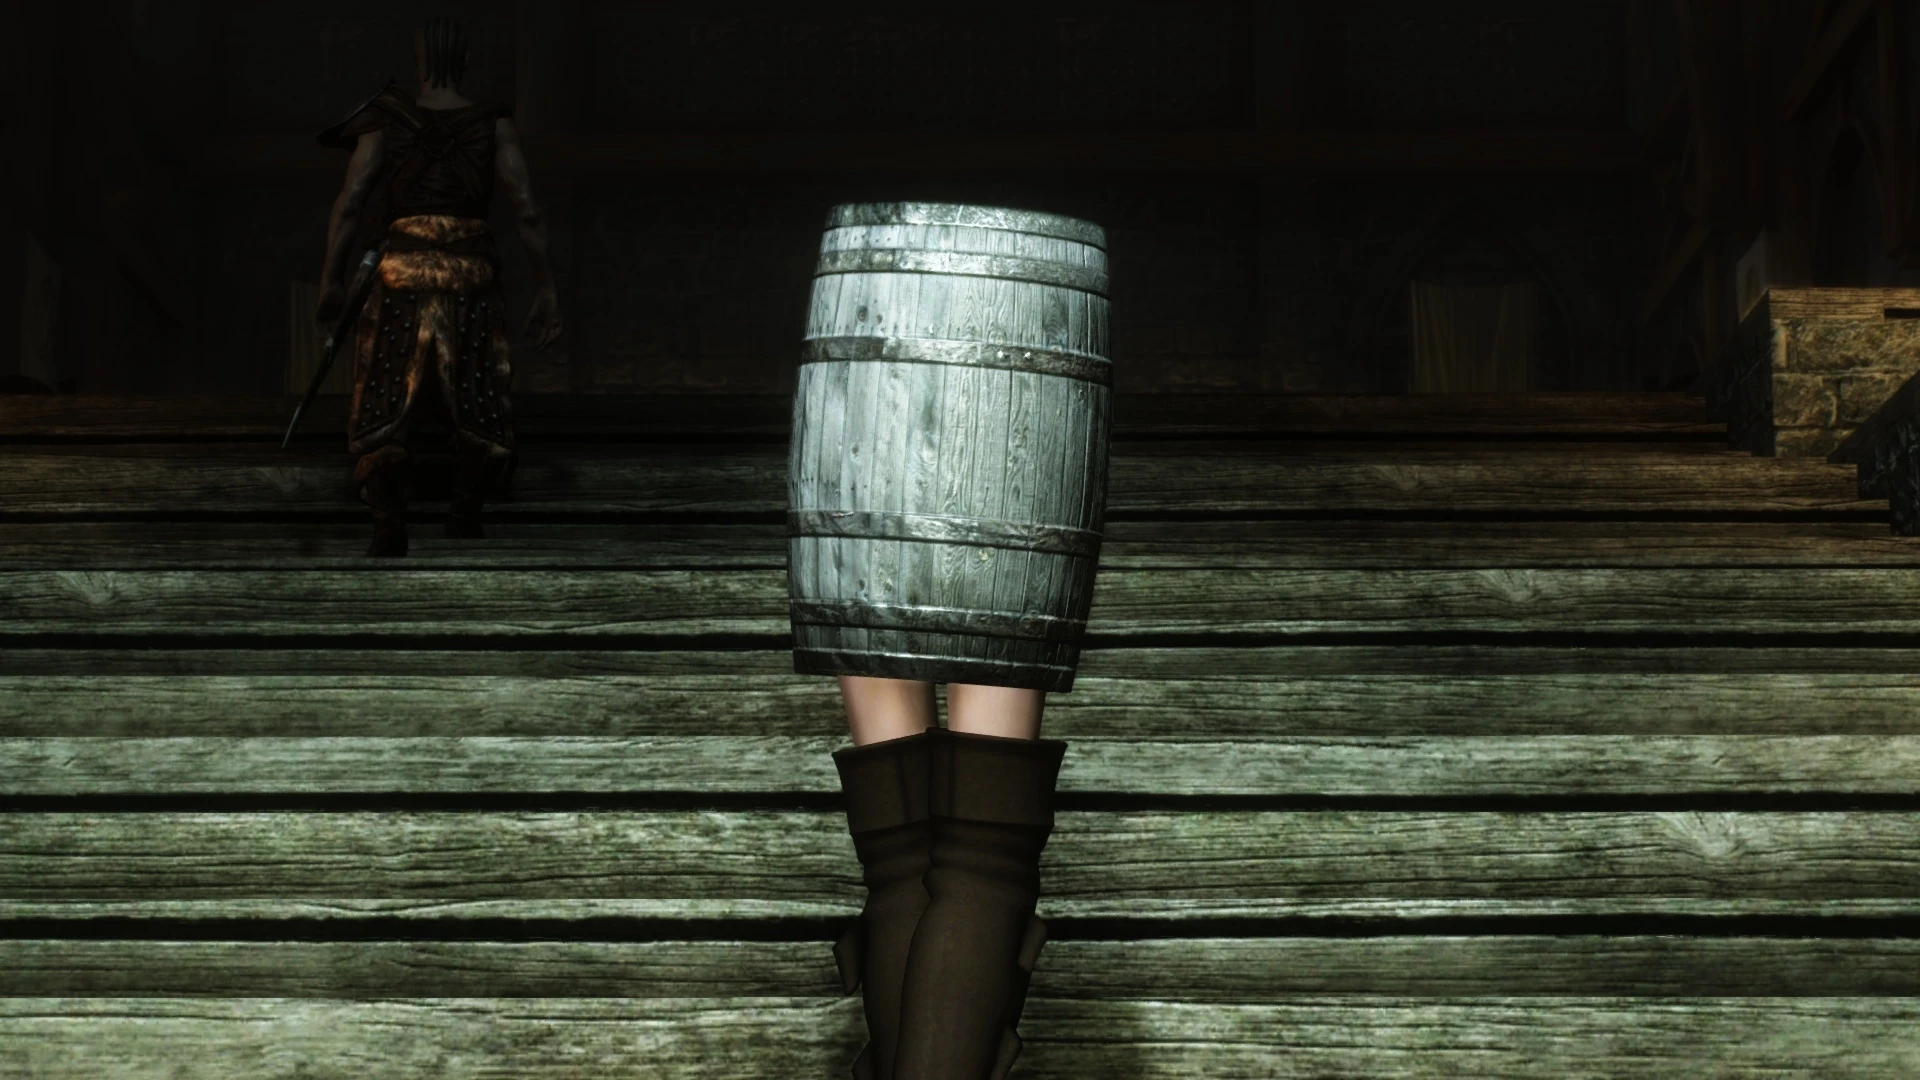 skyrim barrel with legs